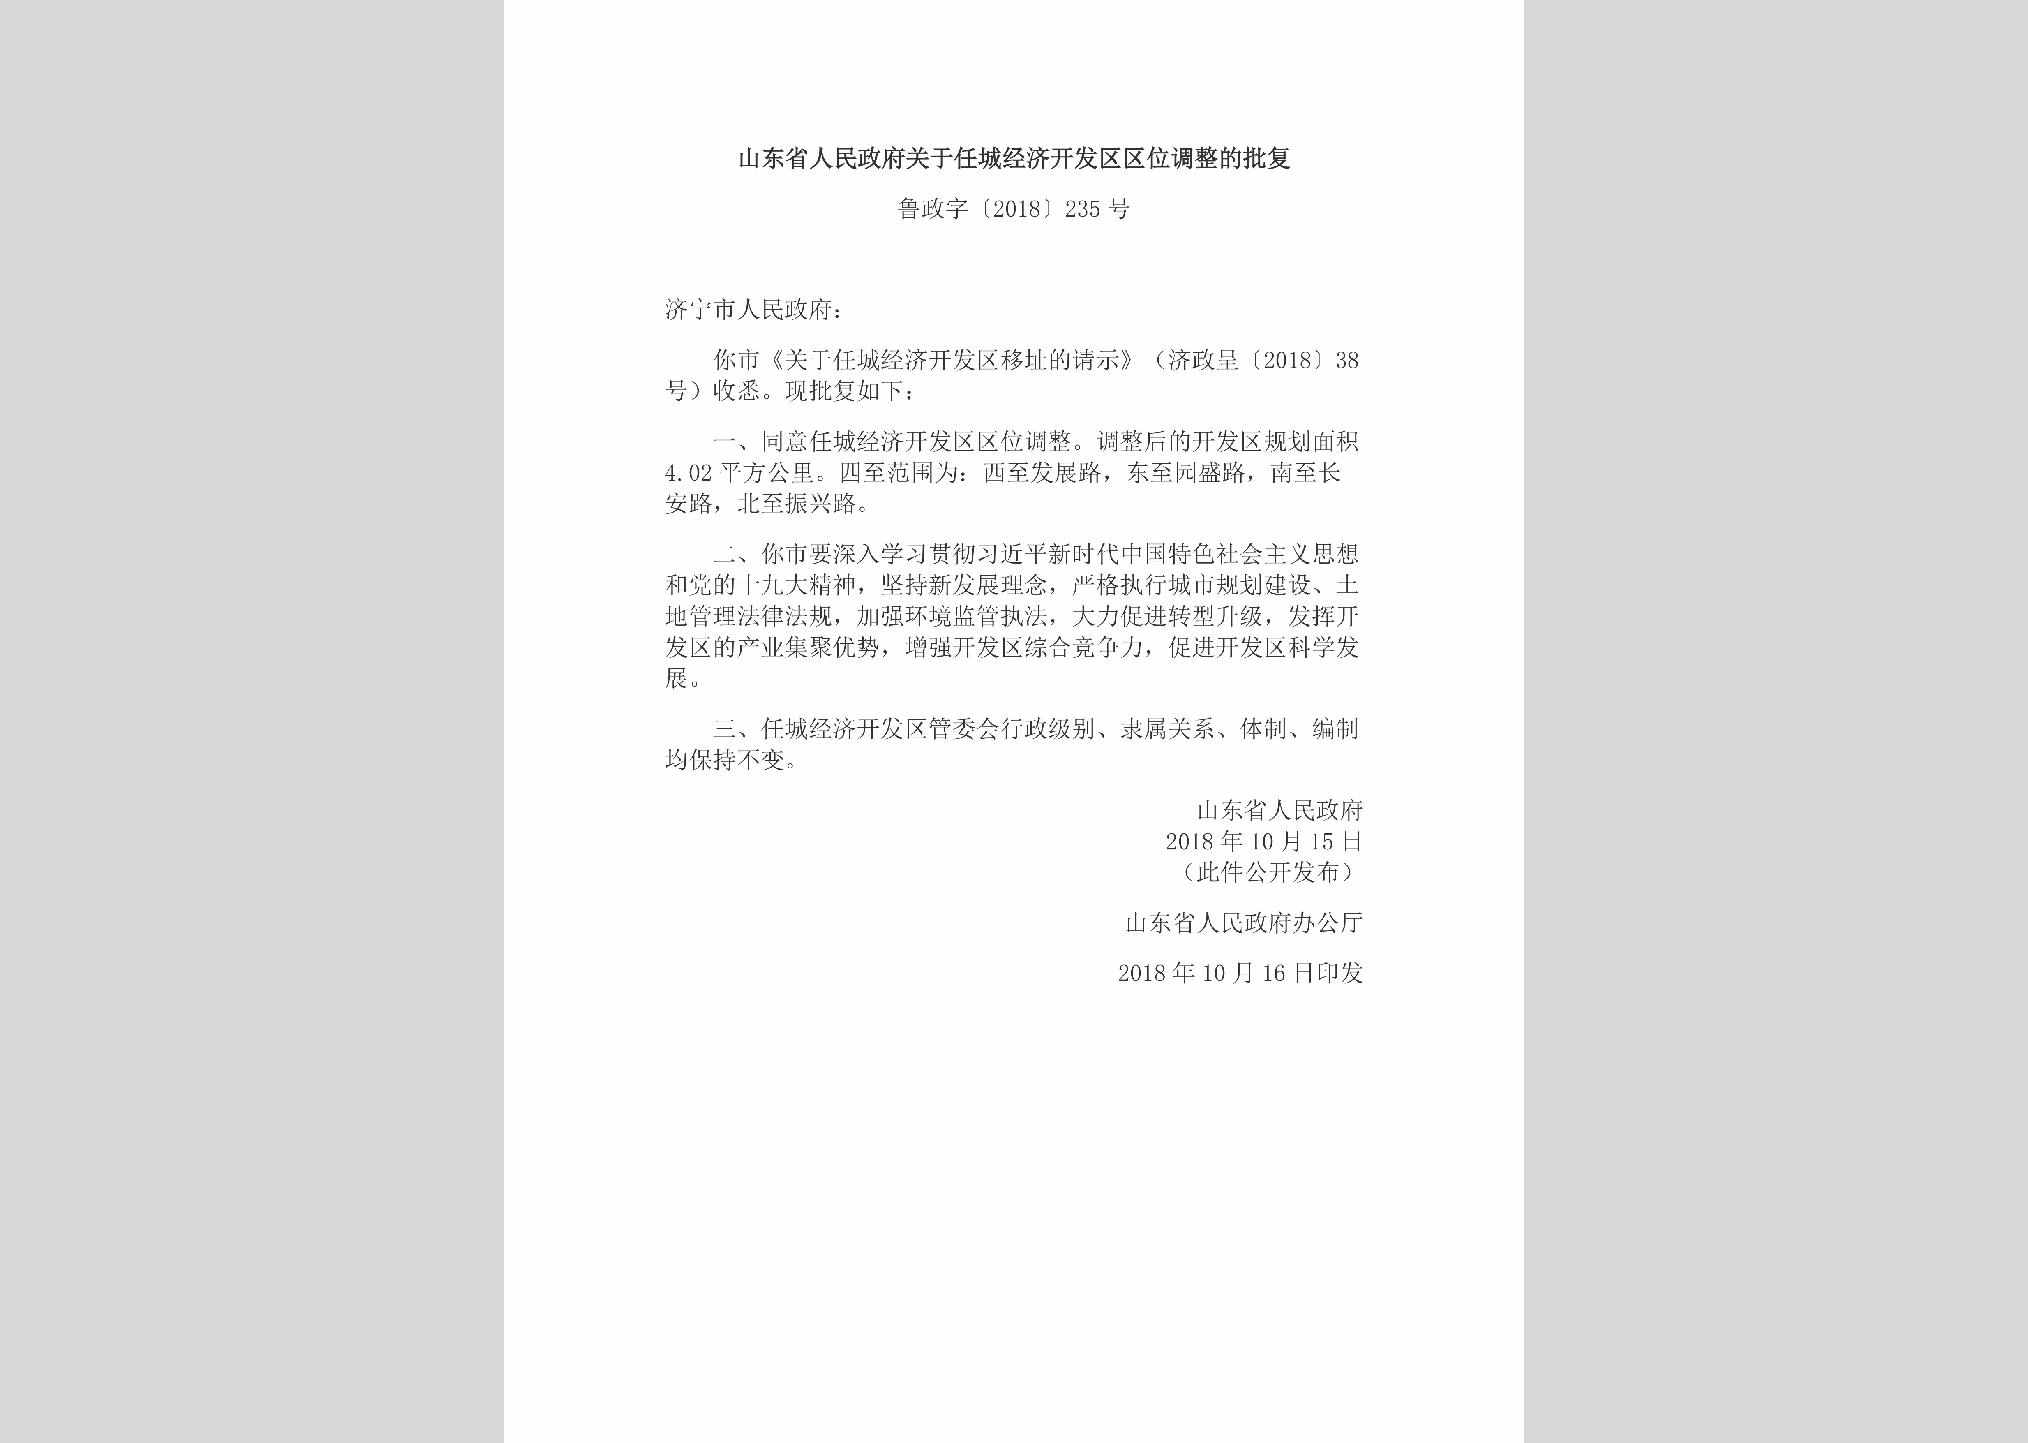 鲁政字[2018]235号：山东省人民政府关于任城经济开发区区位调整的批复